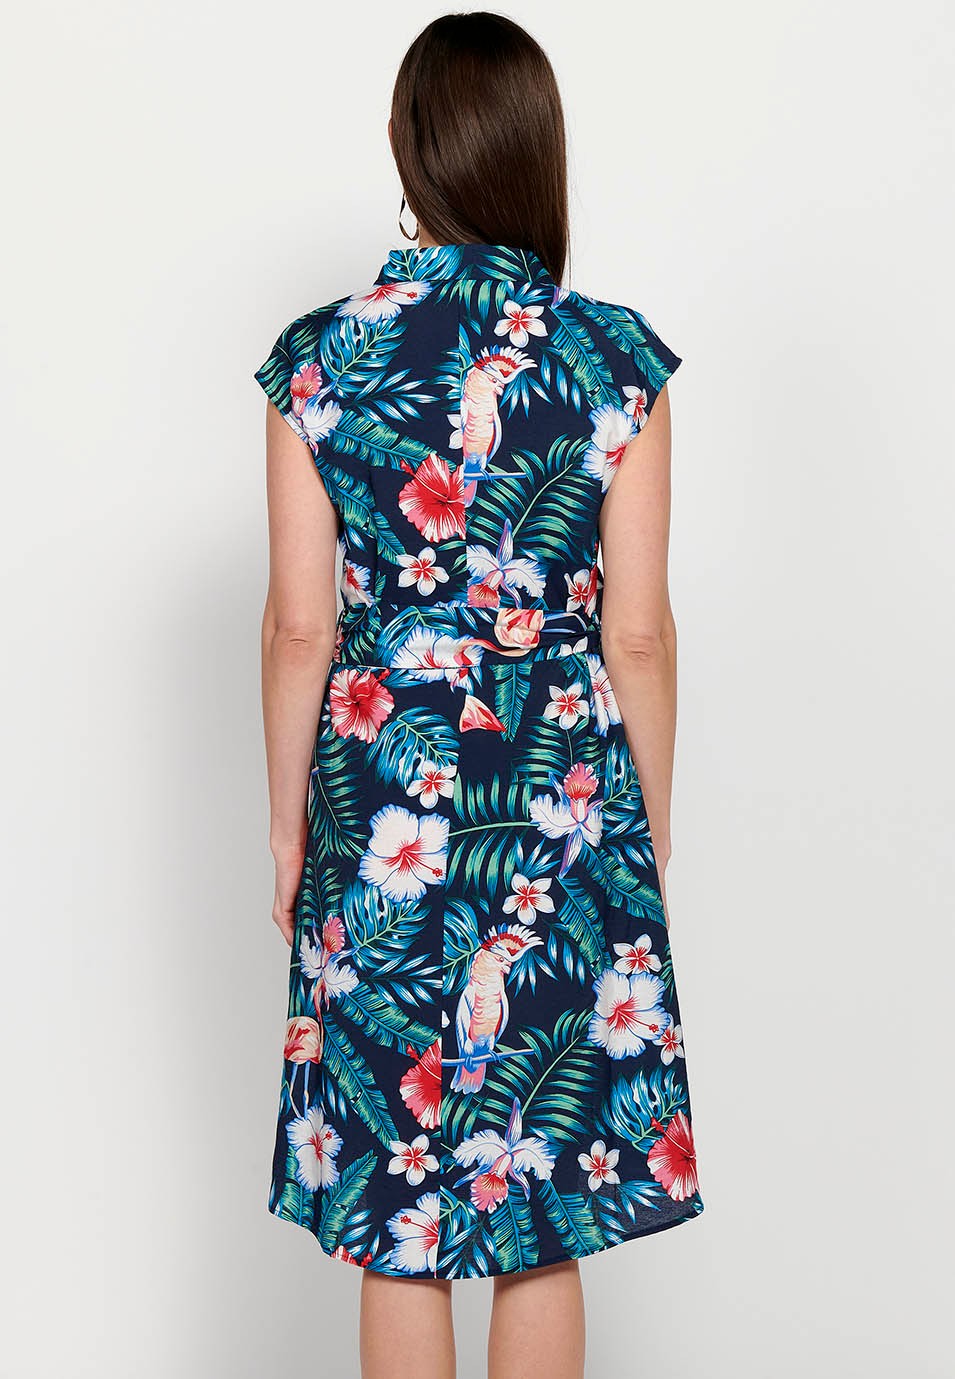 Robe chemise mi-longue à imprimé Floral multicolore pour femmes, manches courtes, fermeture boutonnée sur le devant 6